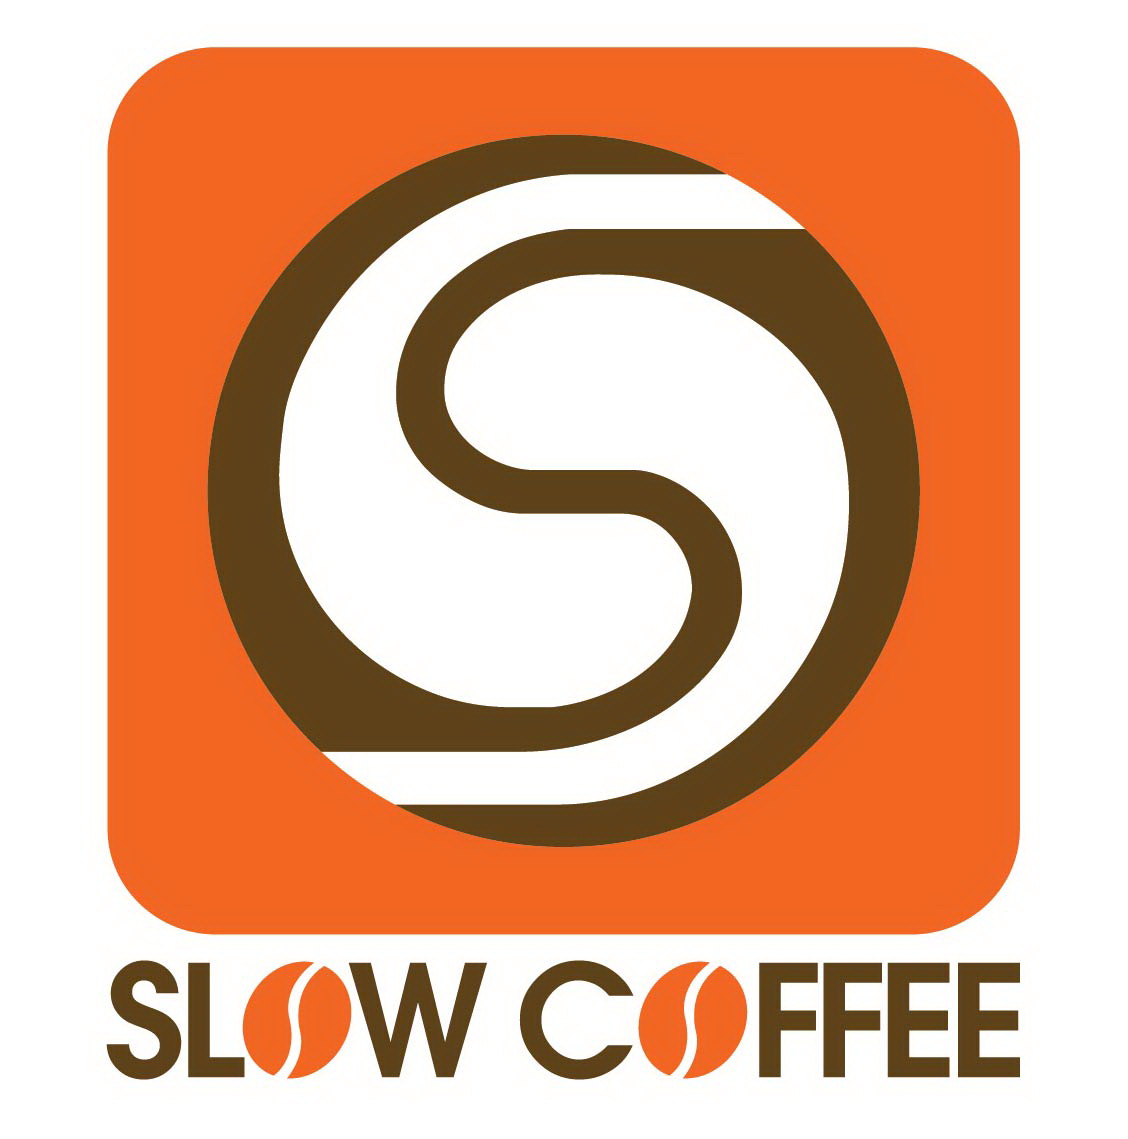 โรงคั่วกาแฟ สโลว์ คอฟฟี่ (slow coffee roastery)